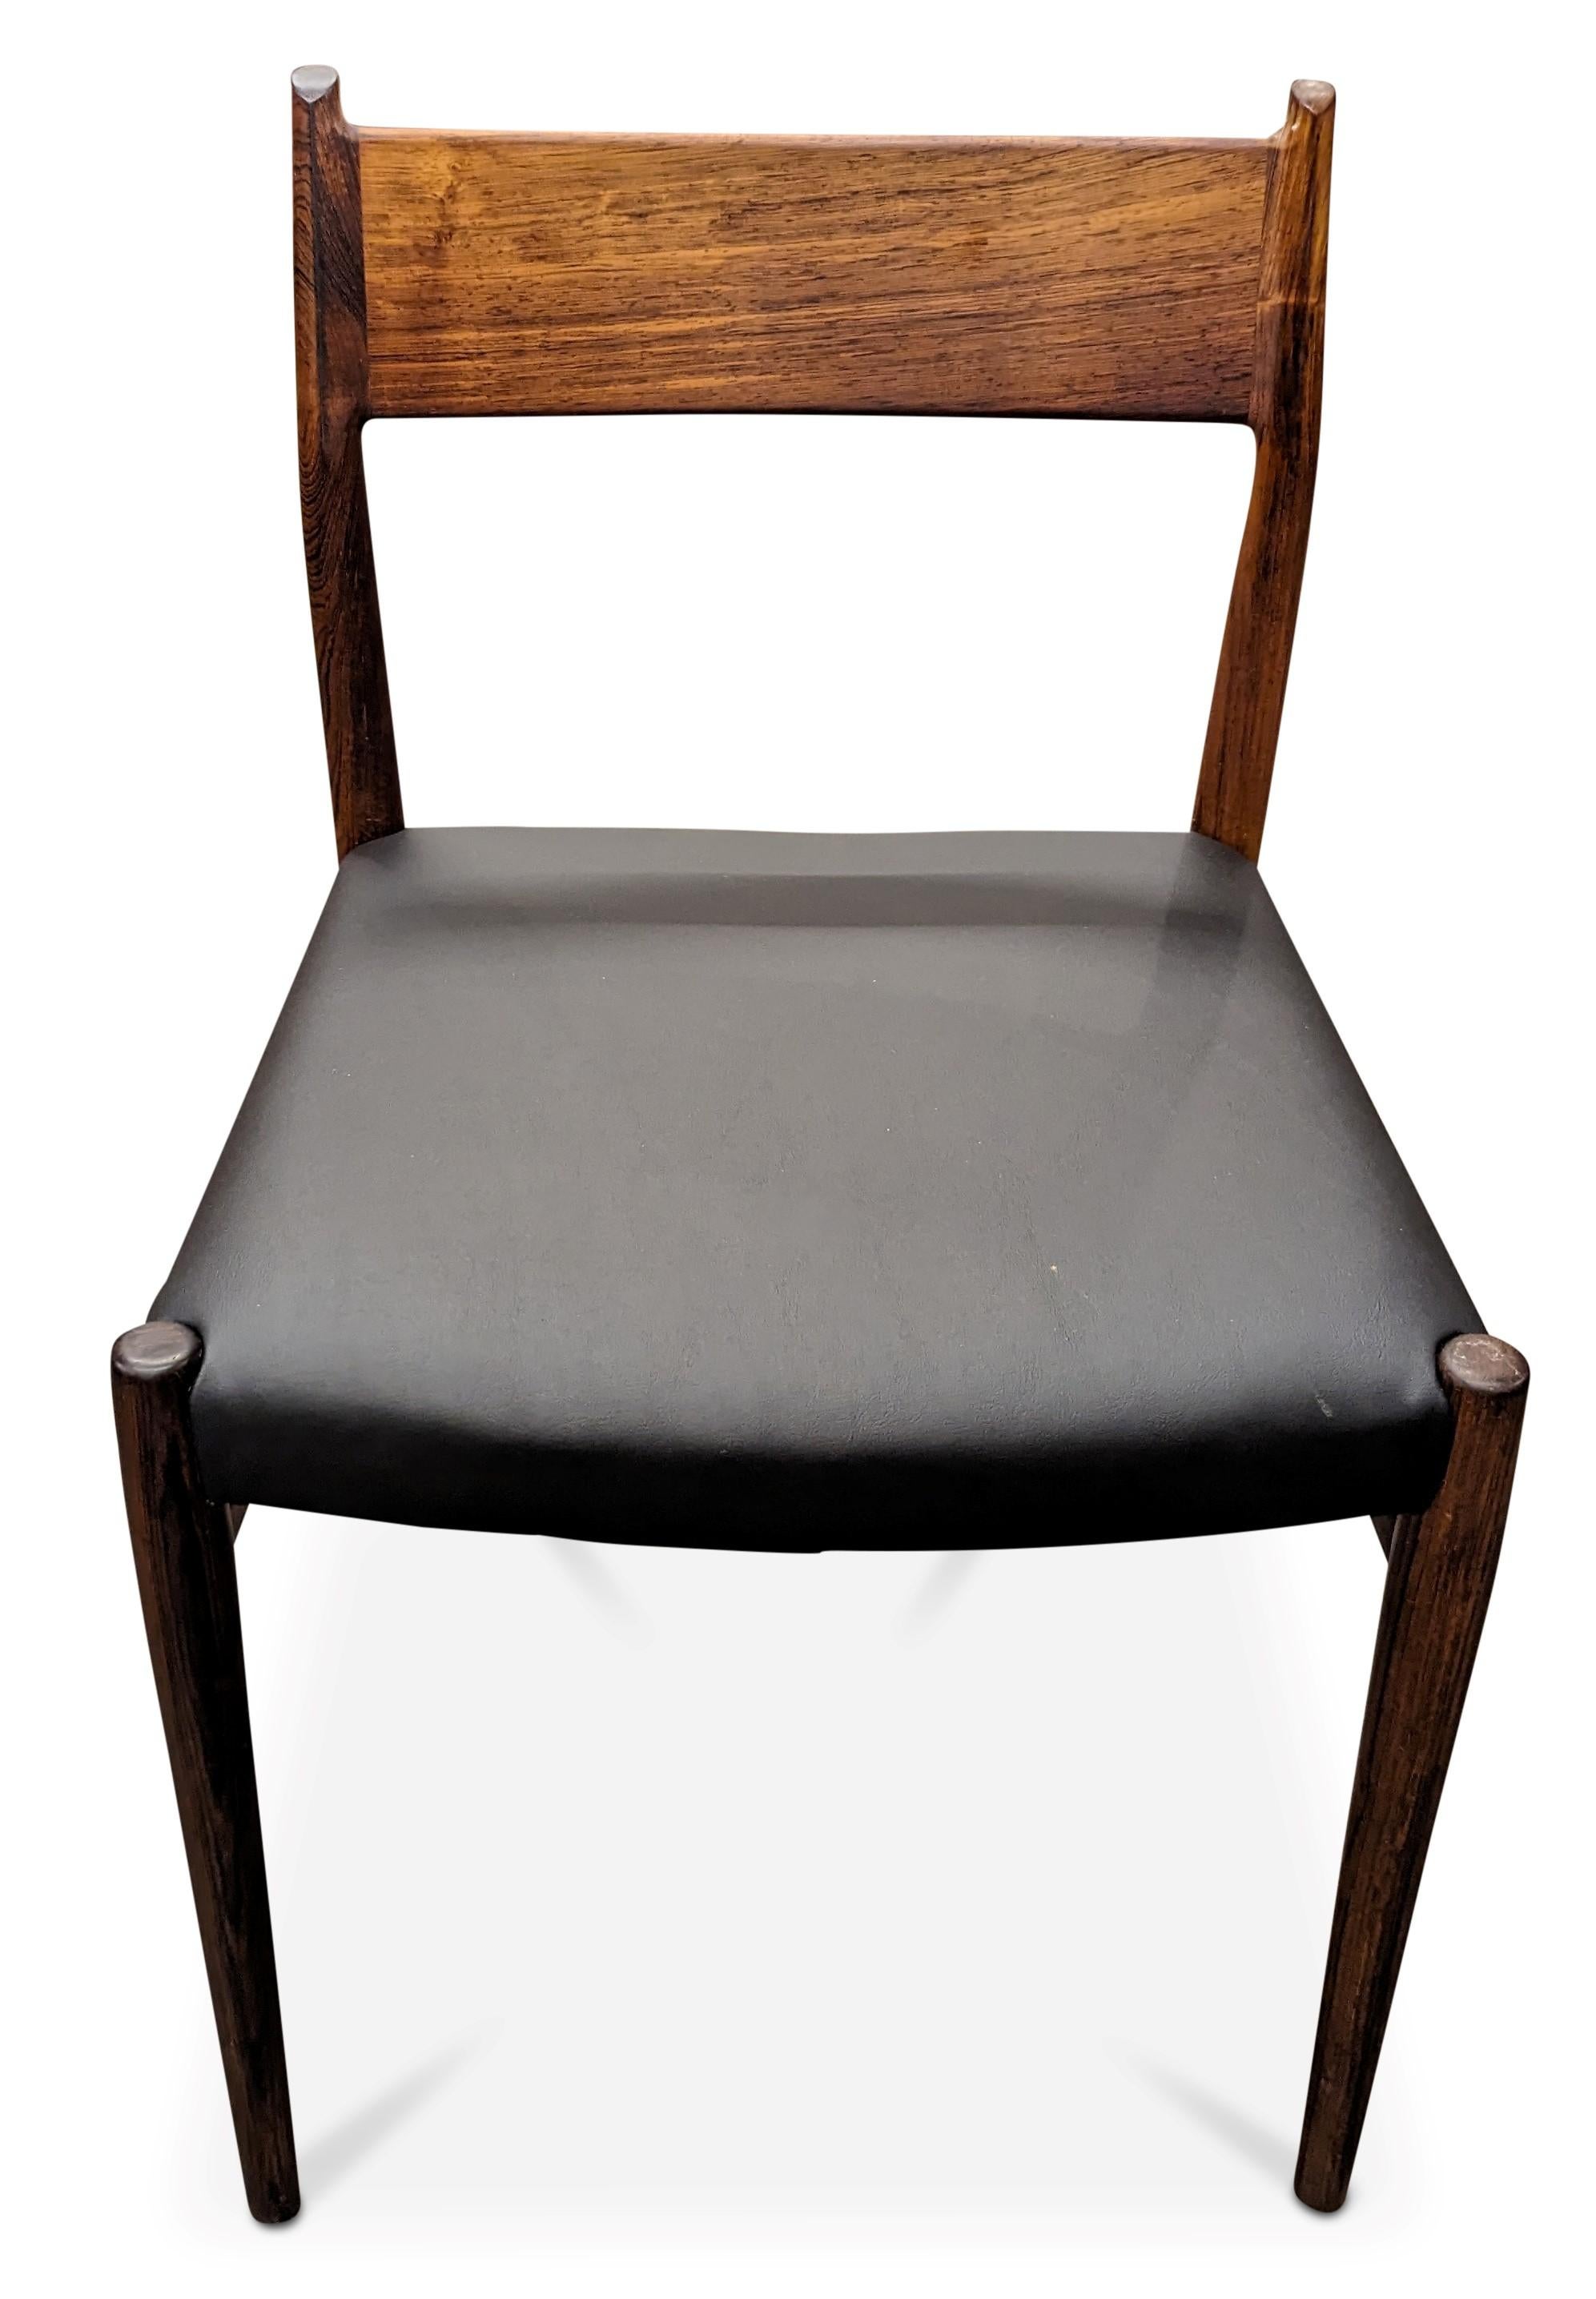 Scandinavian Modern Vintage Danish Arne Vodder for Sibast Mobler Rosewood Dining Chair - 082316 For Sale